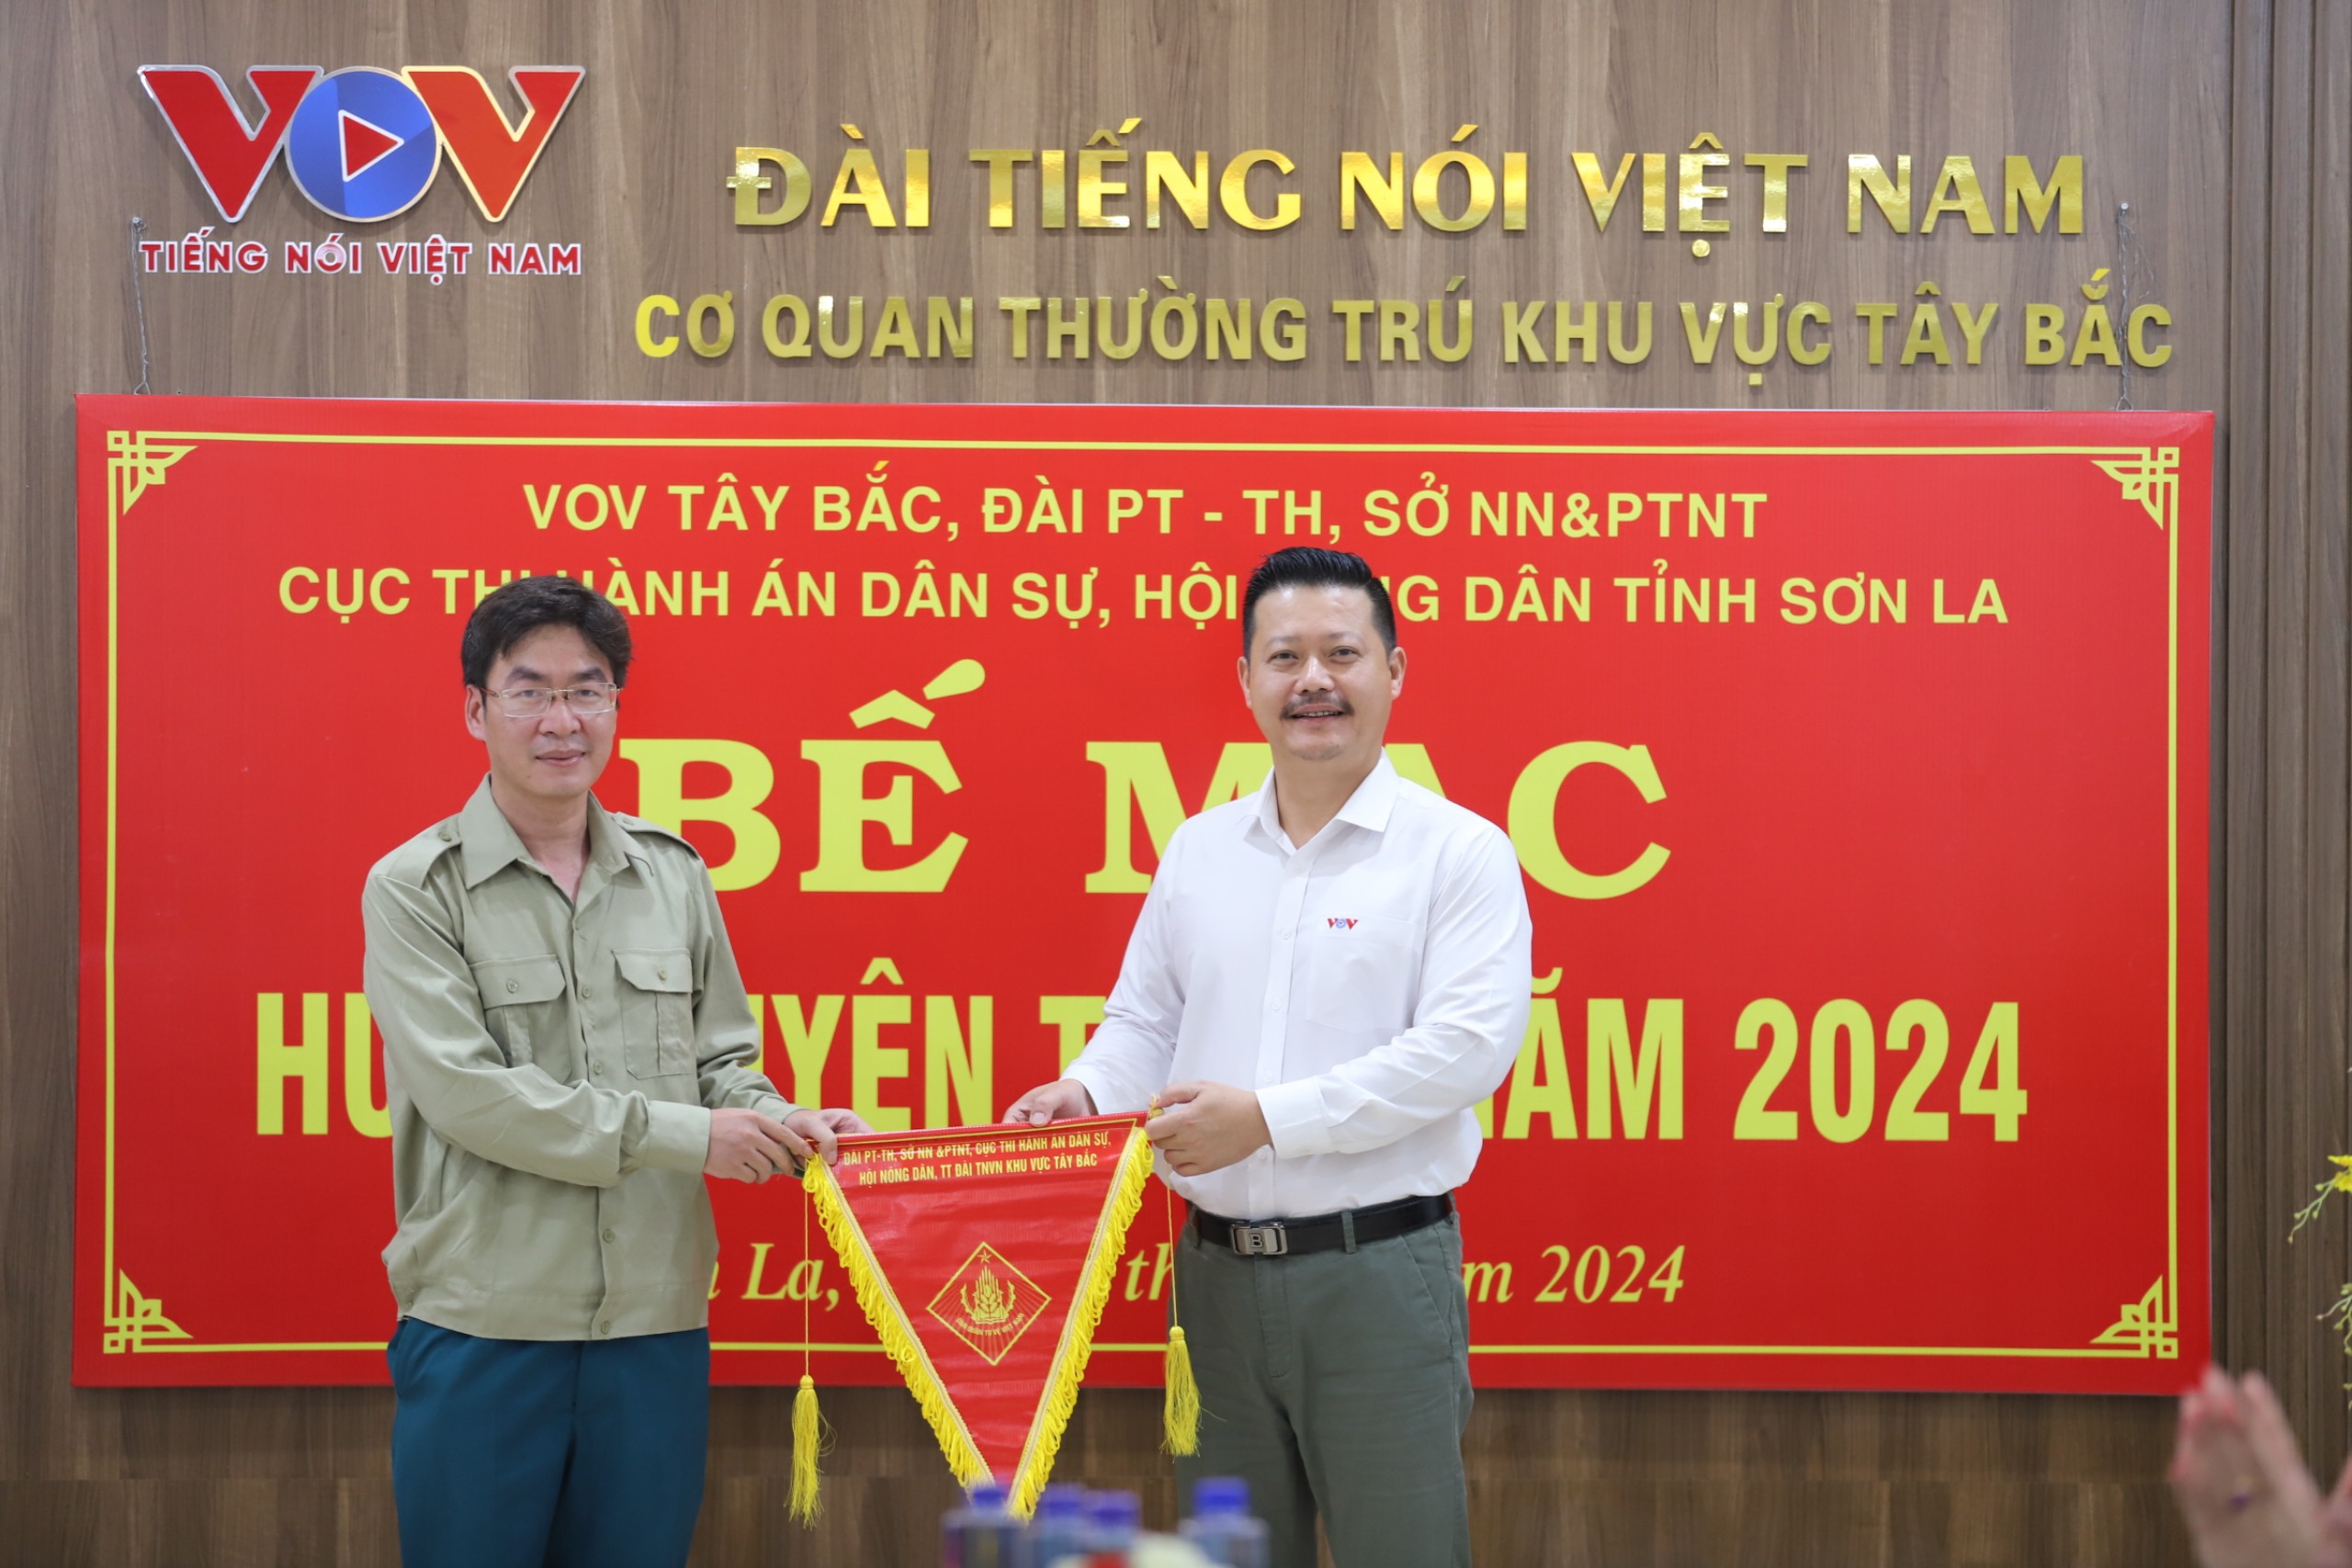 Tiểu đội Tự vệ Cục THADS tỉnh Sơn La phối hợp huấn luyện tự vệ năm 2024 3